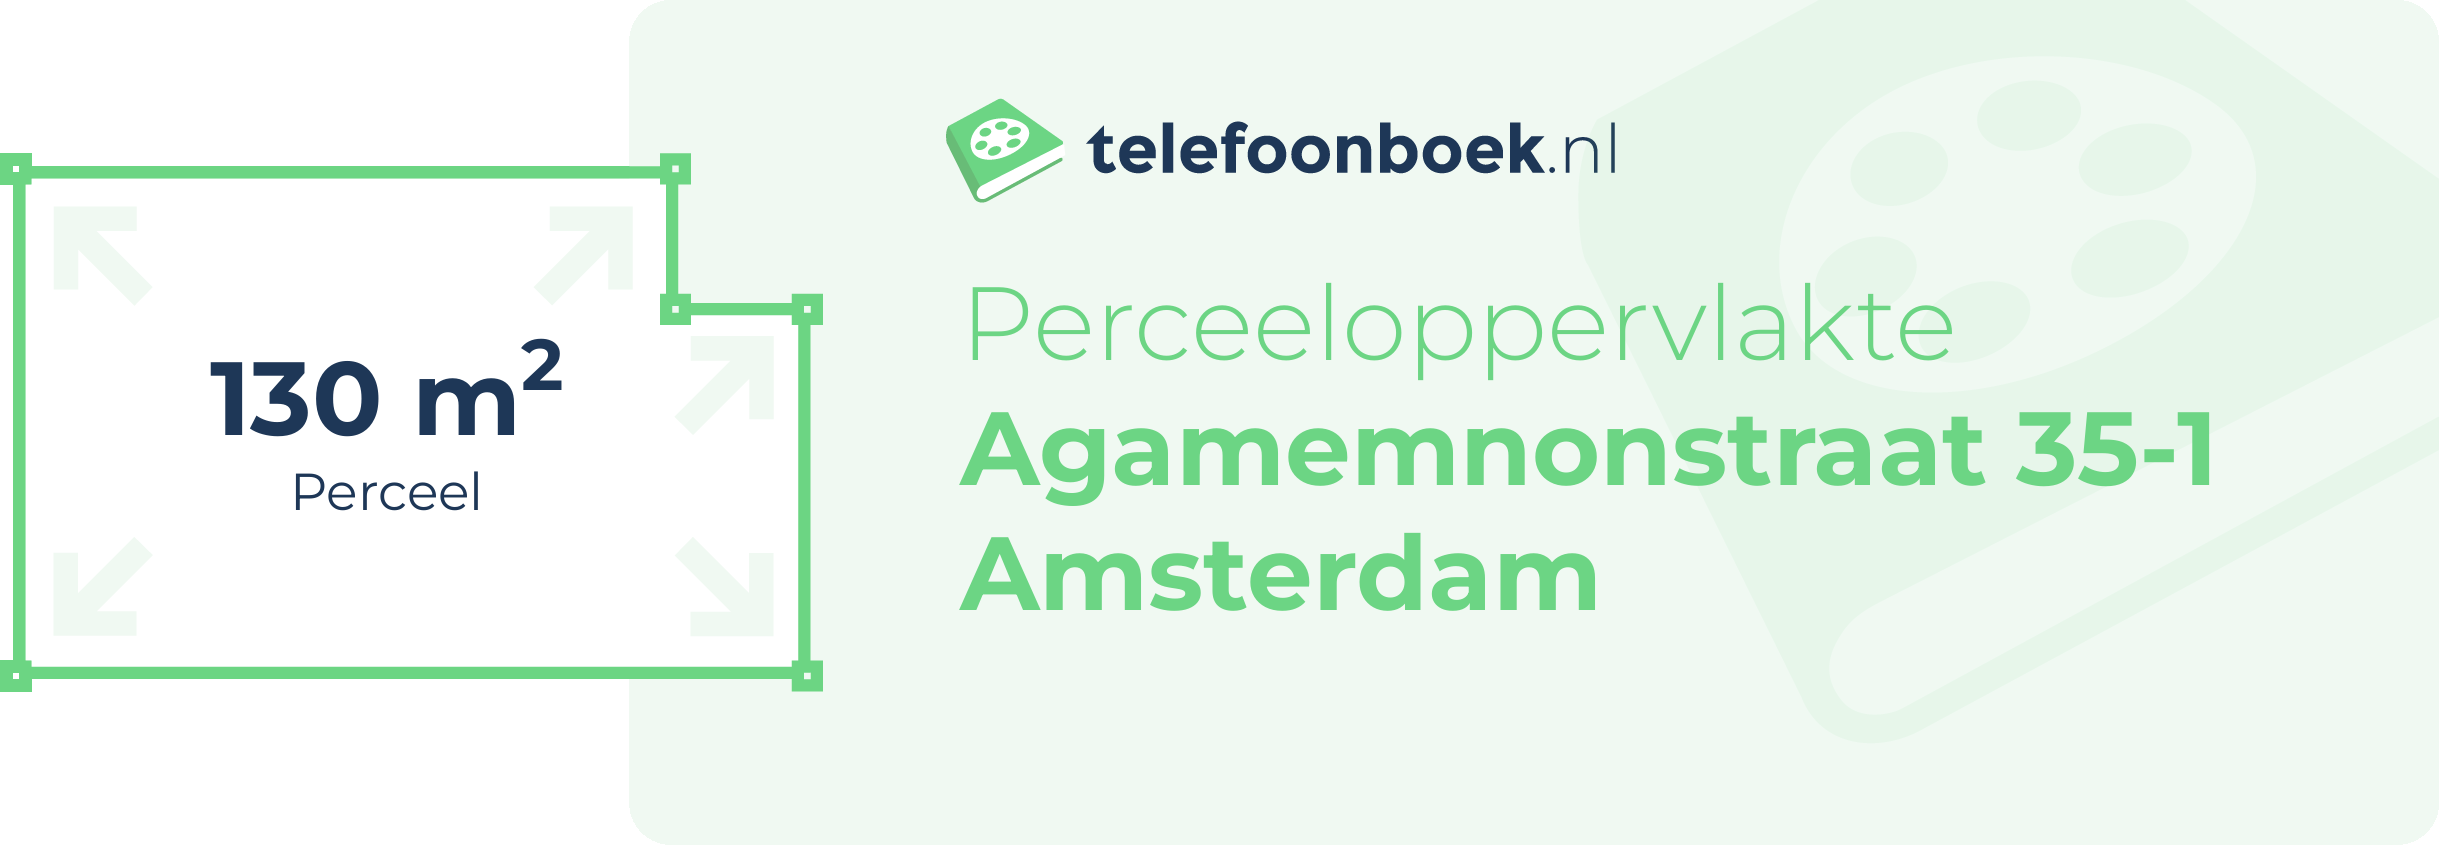 Perceeloppervlakte Agamemnonstraat 35-1 Amsterdam